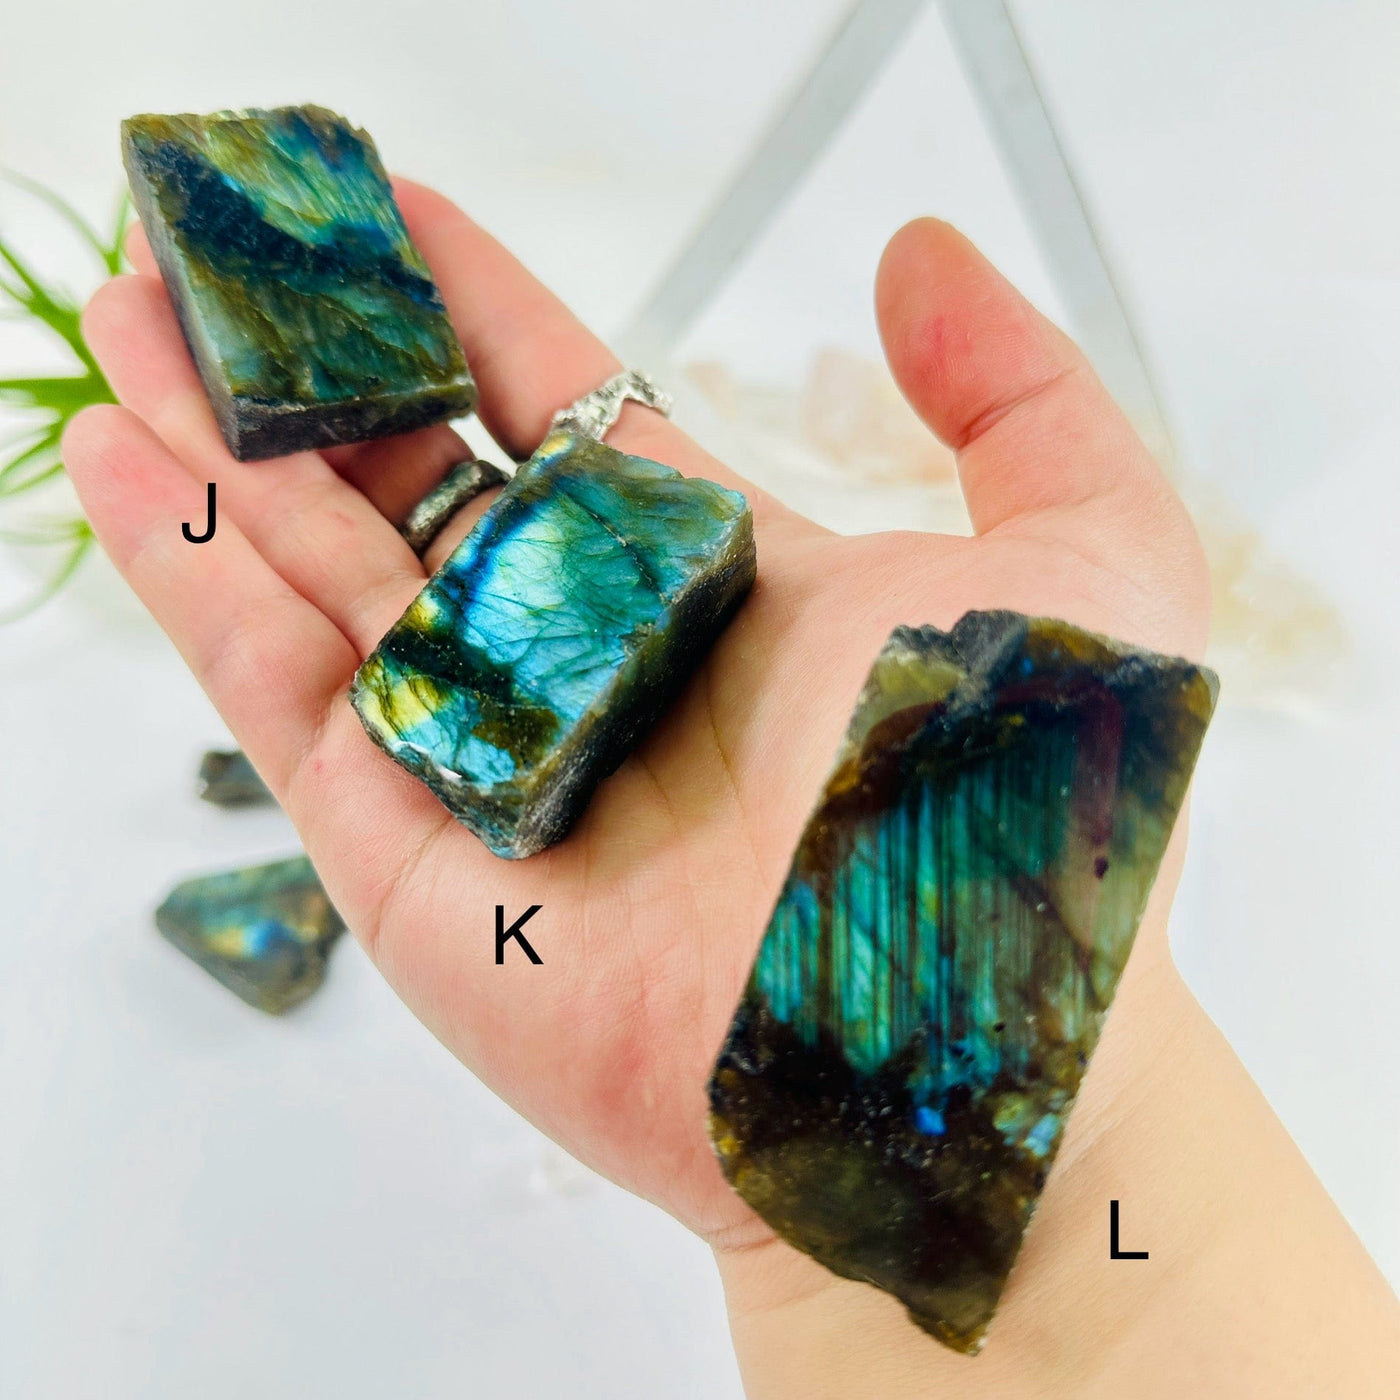 Labradorite Semi Polished Crystal Slab - YOU CHOOSE - variants J K L labeled on hand